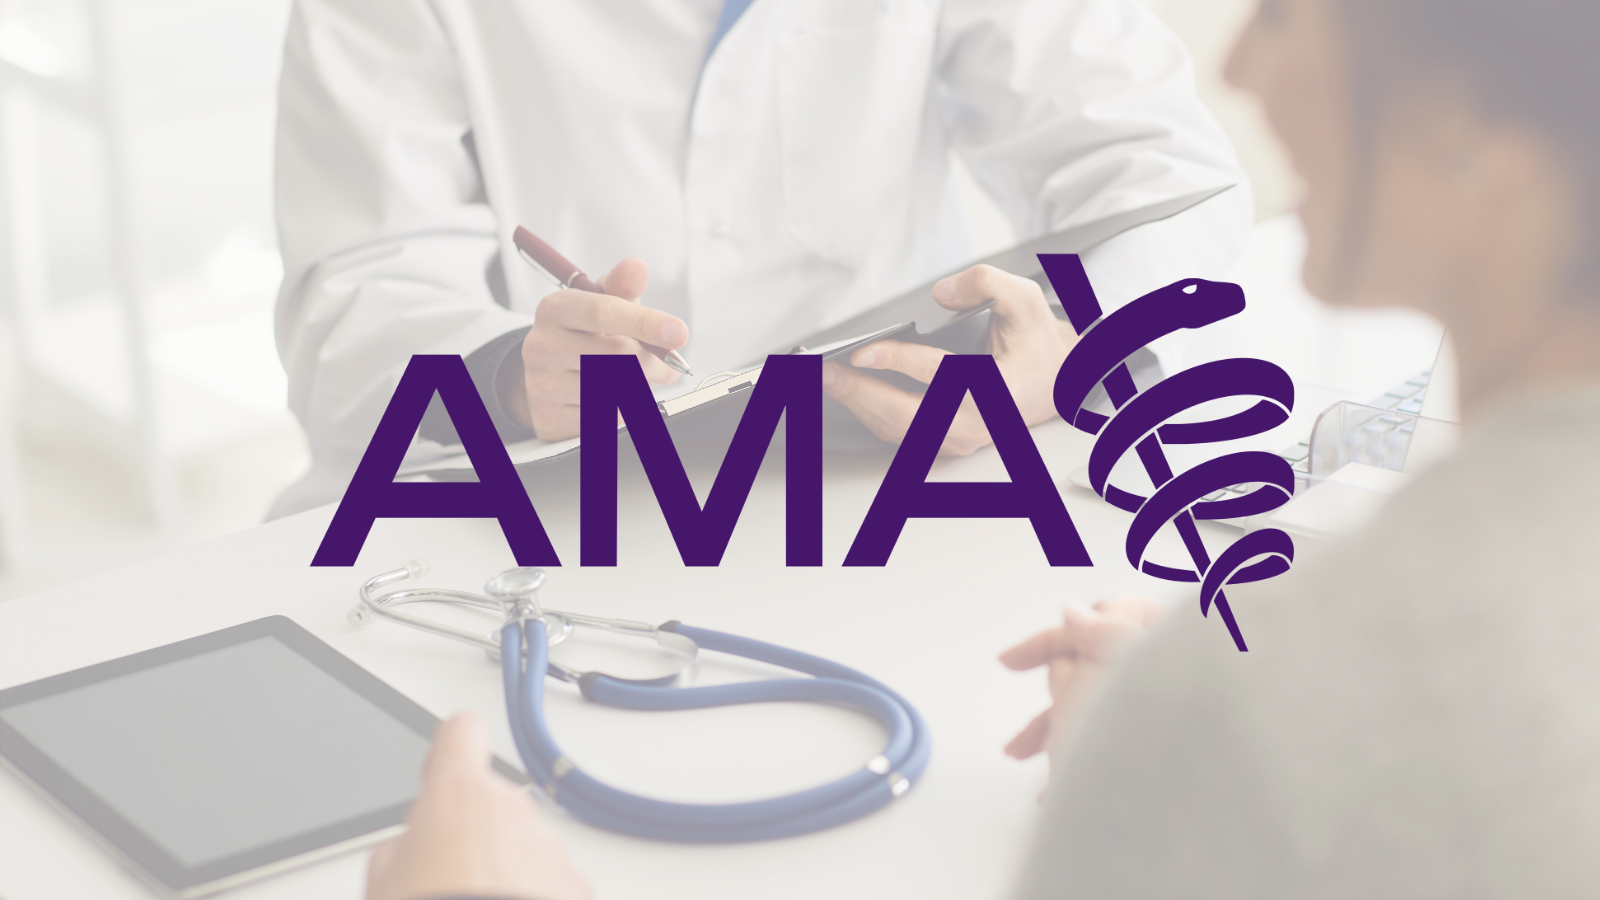 American Medical Association (AMA) logo